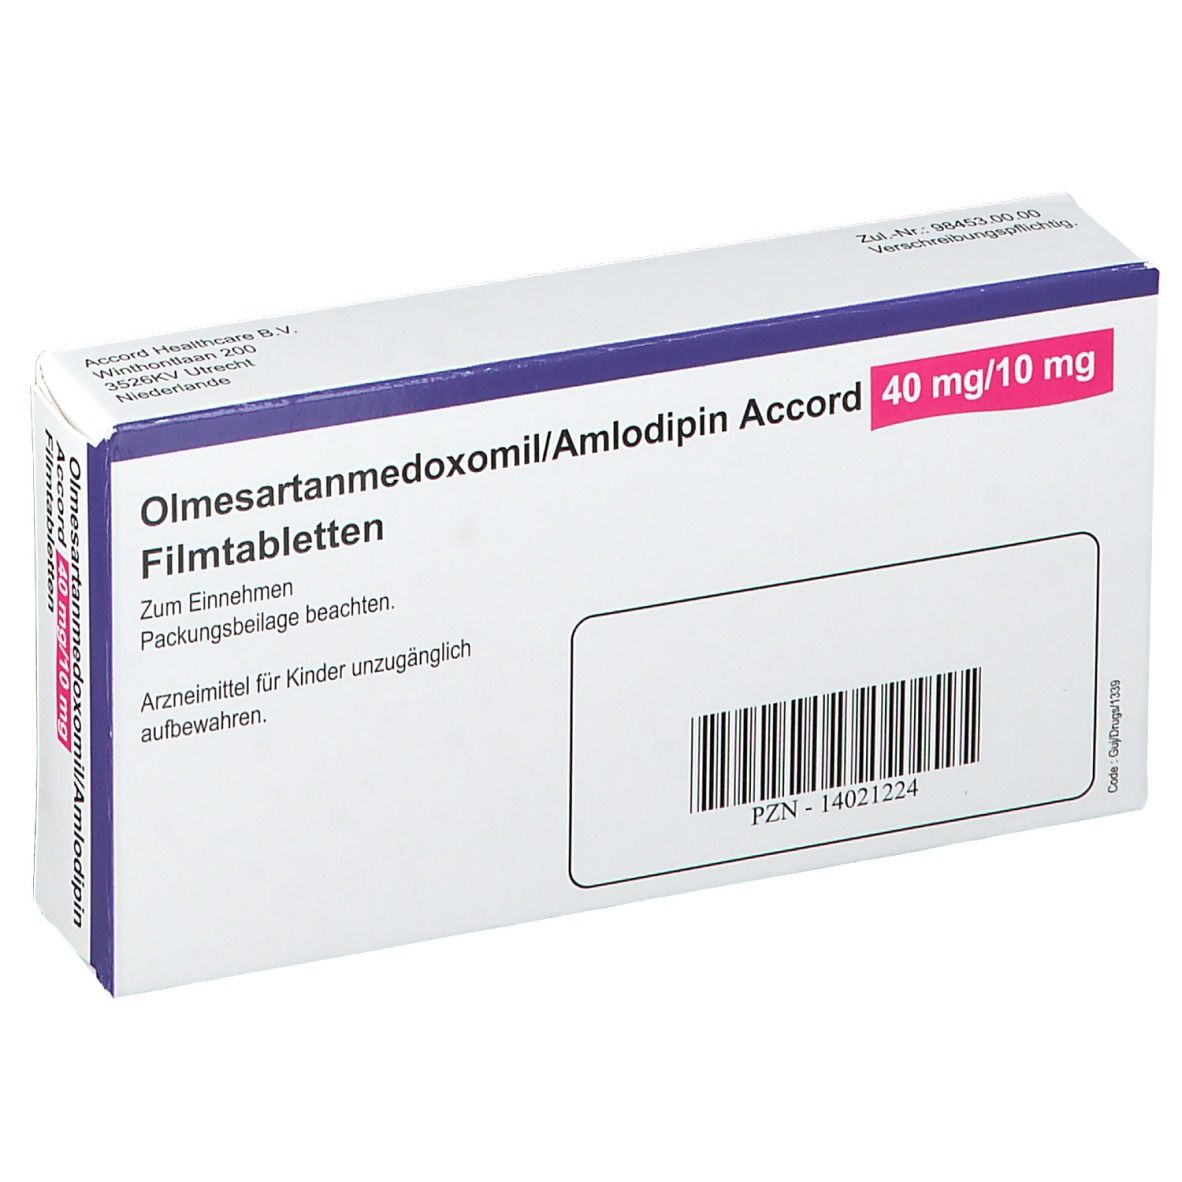 Olmesartanmedoxomil/Amlodipin Accord 40 mg/10 mg